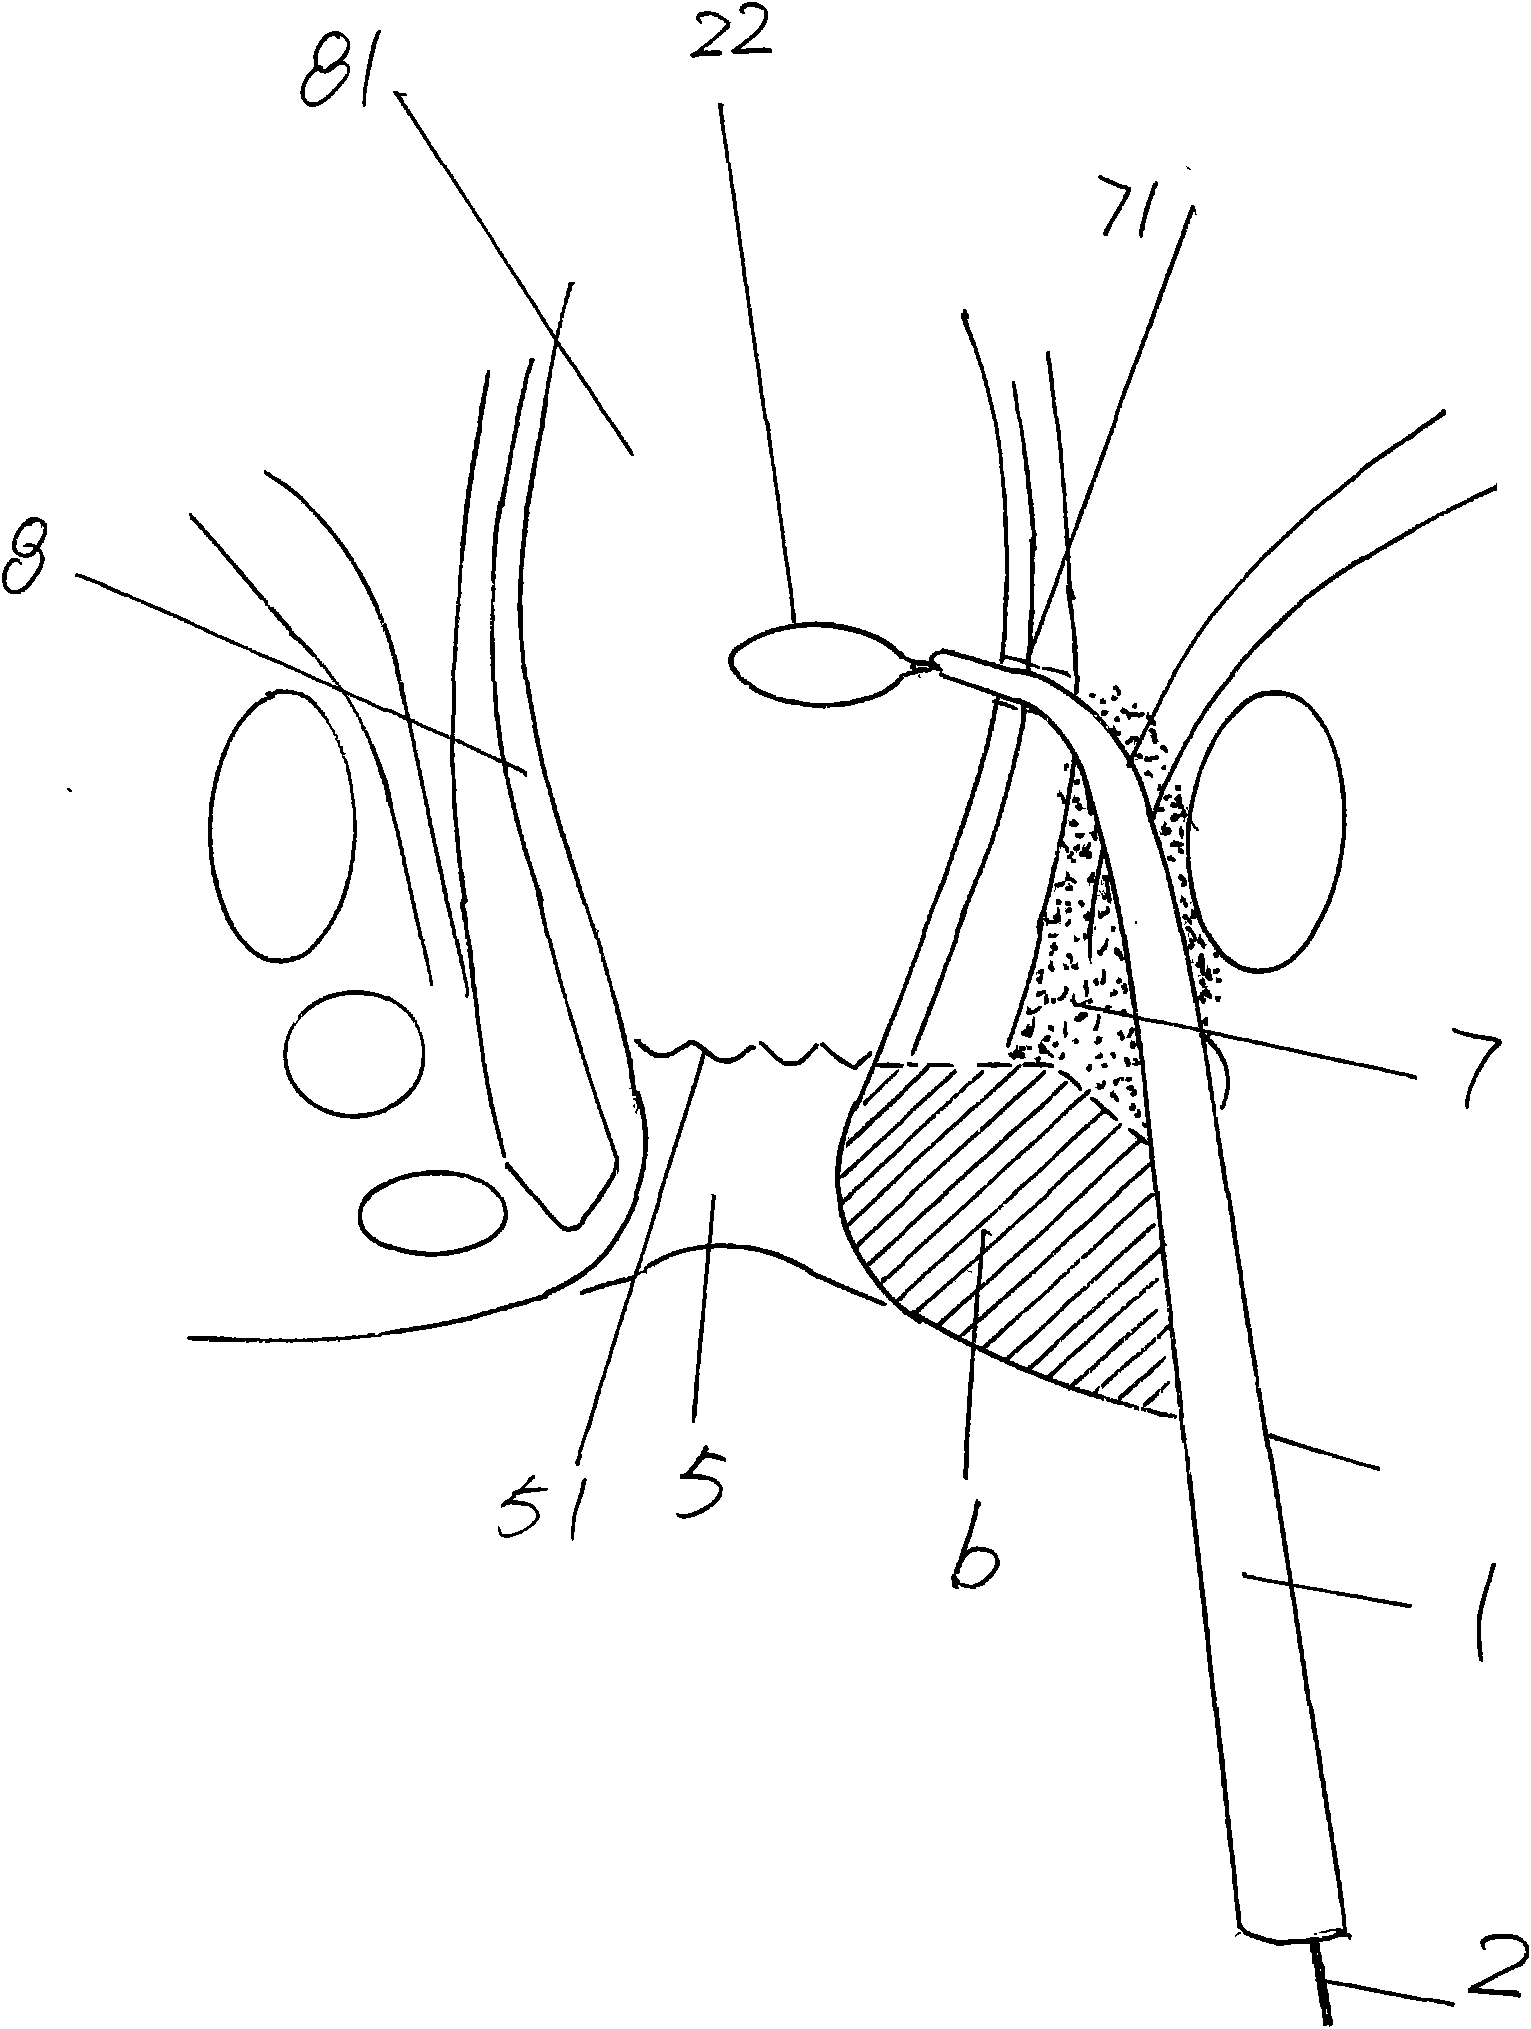 Anal fistula seton device